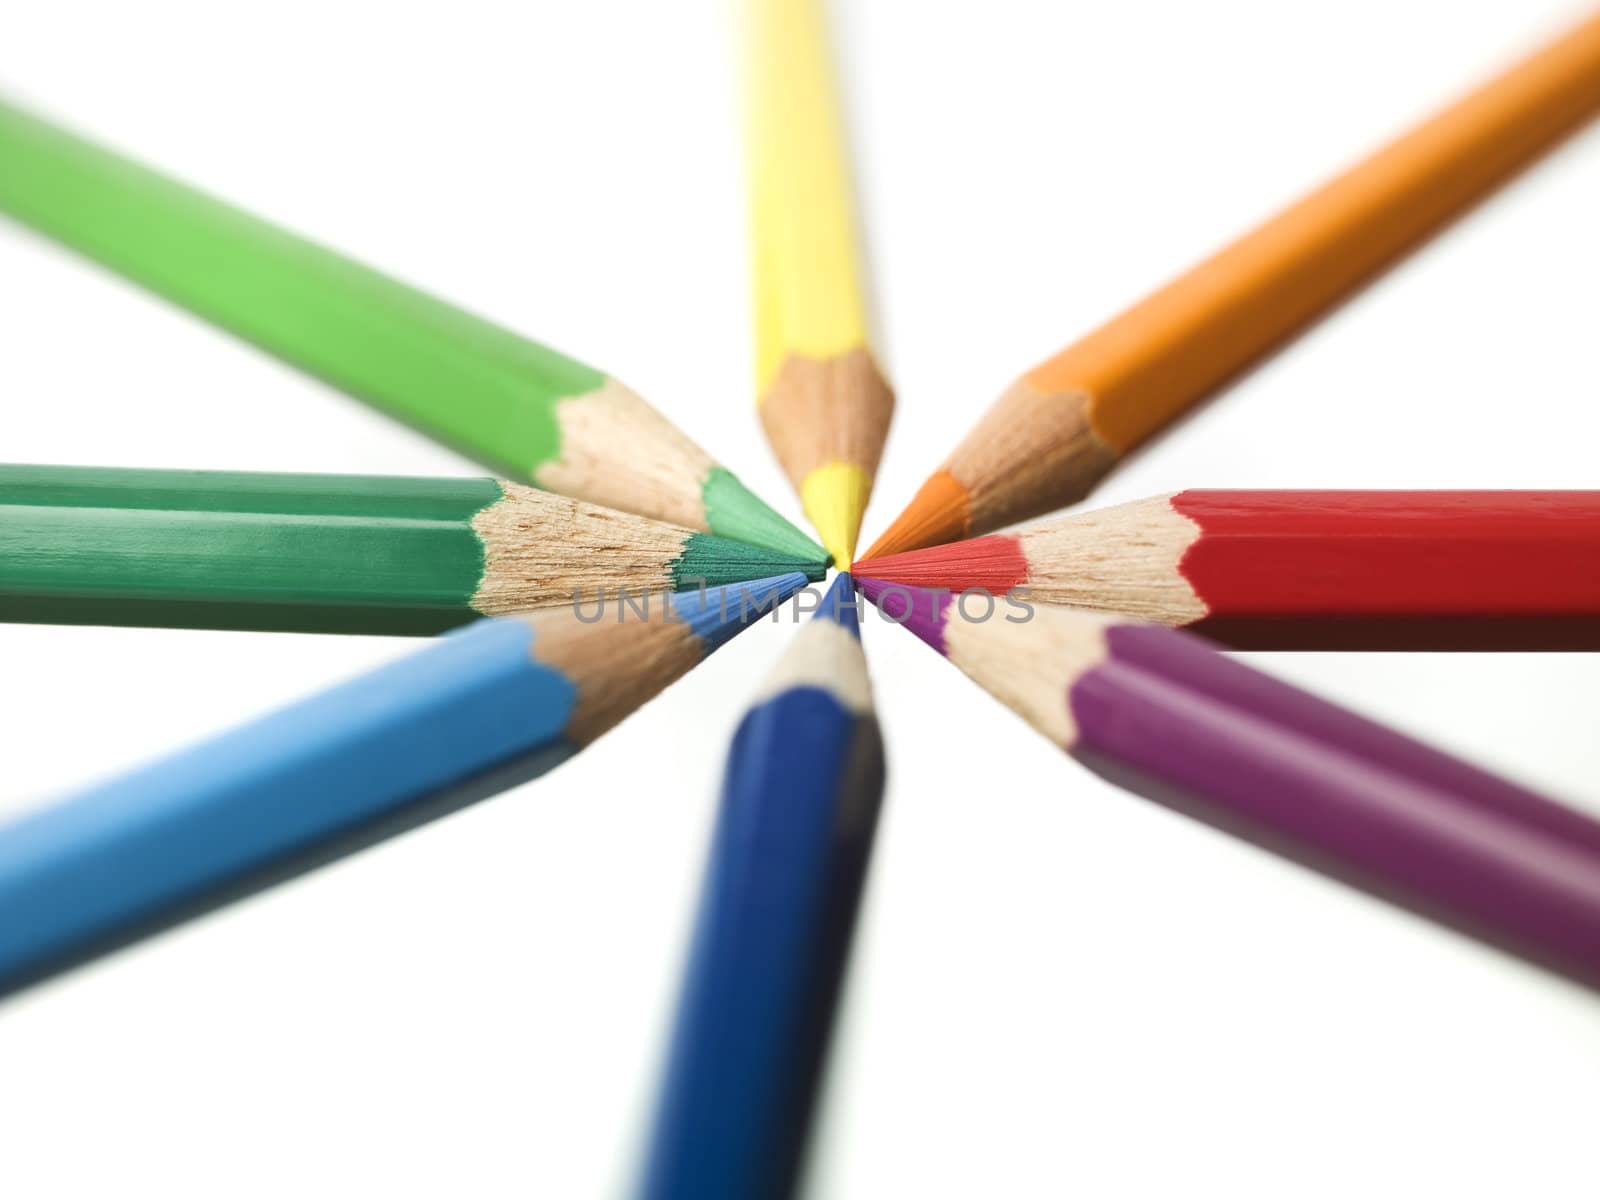 Colourd pencils by gemenacom